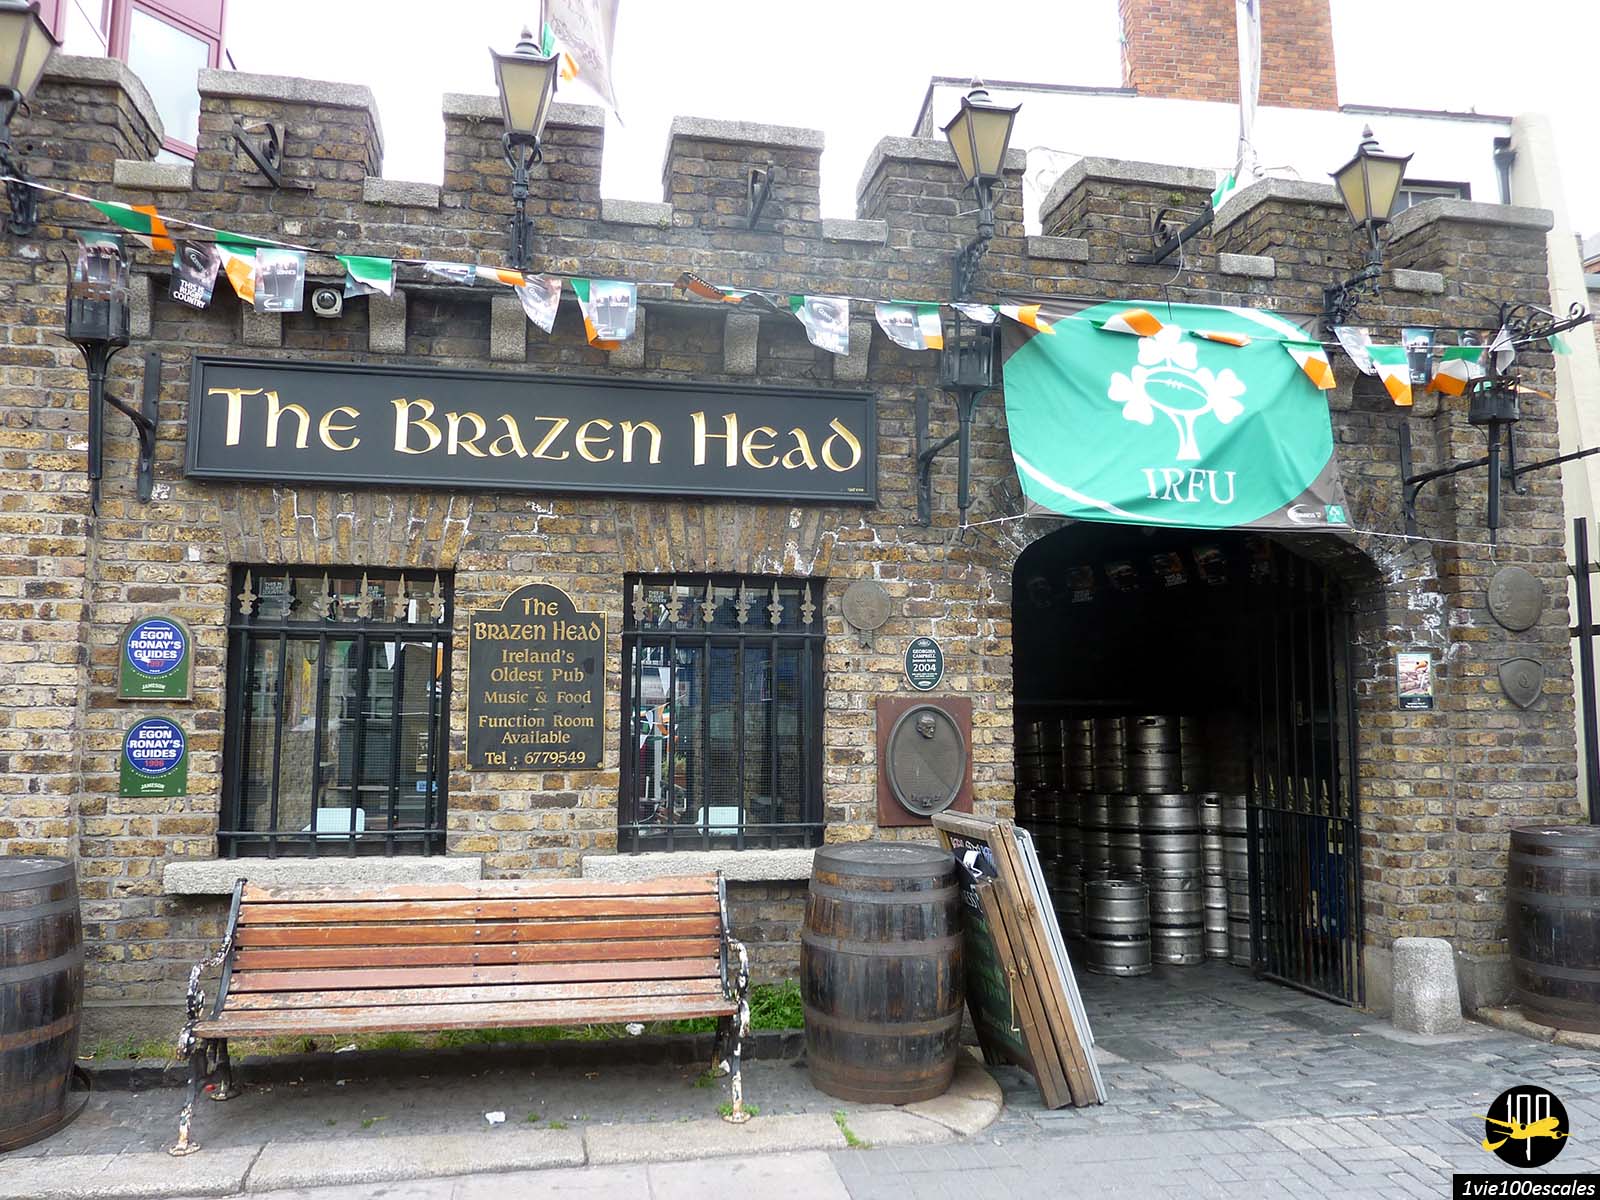 Le Brazen Head est considéré comme l'un des plus vieux pubs d'Irlande. Cette ancienne auberge devenu un pub a su se réinventer